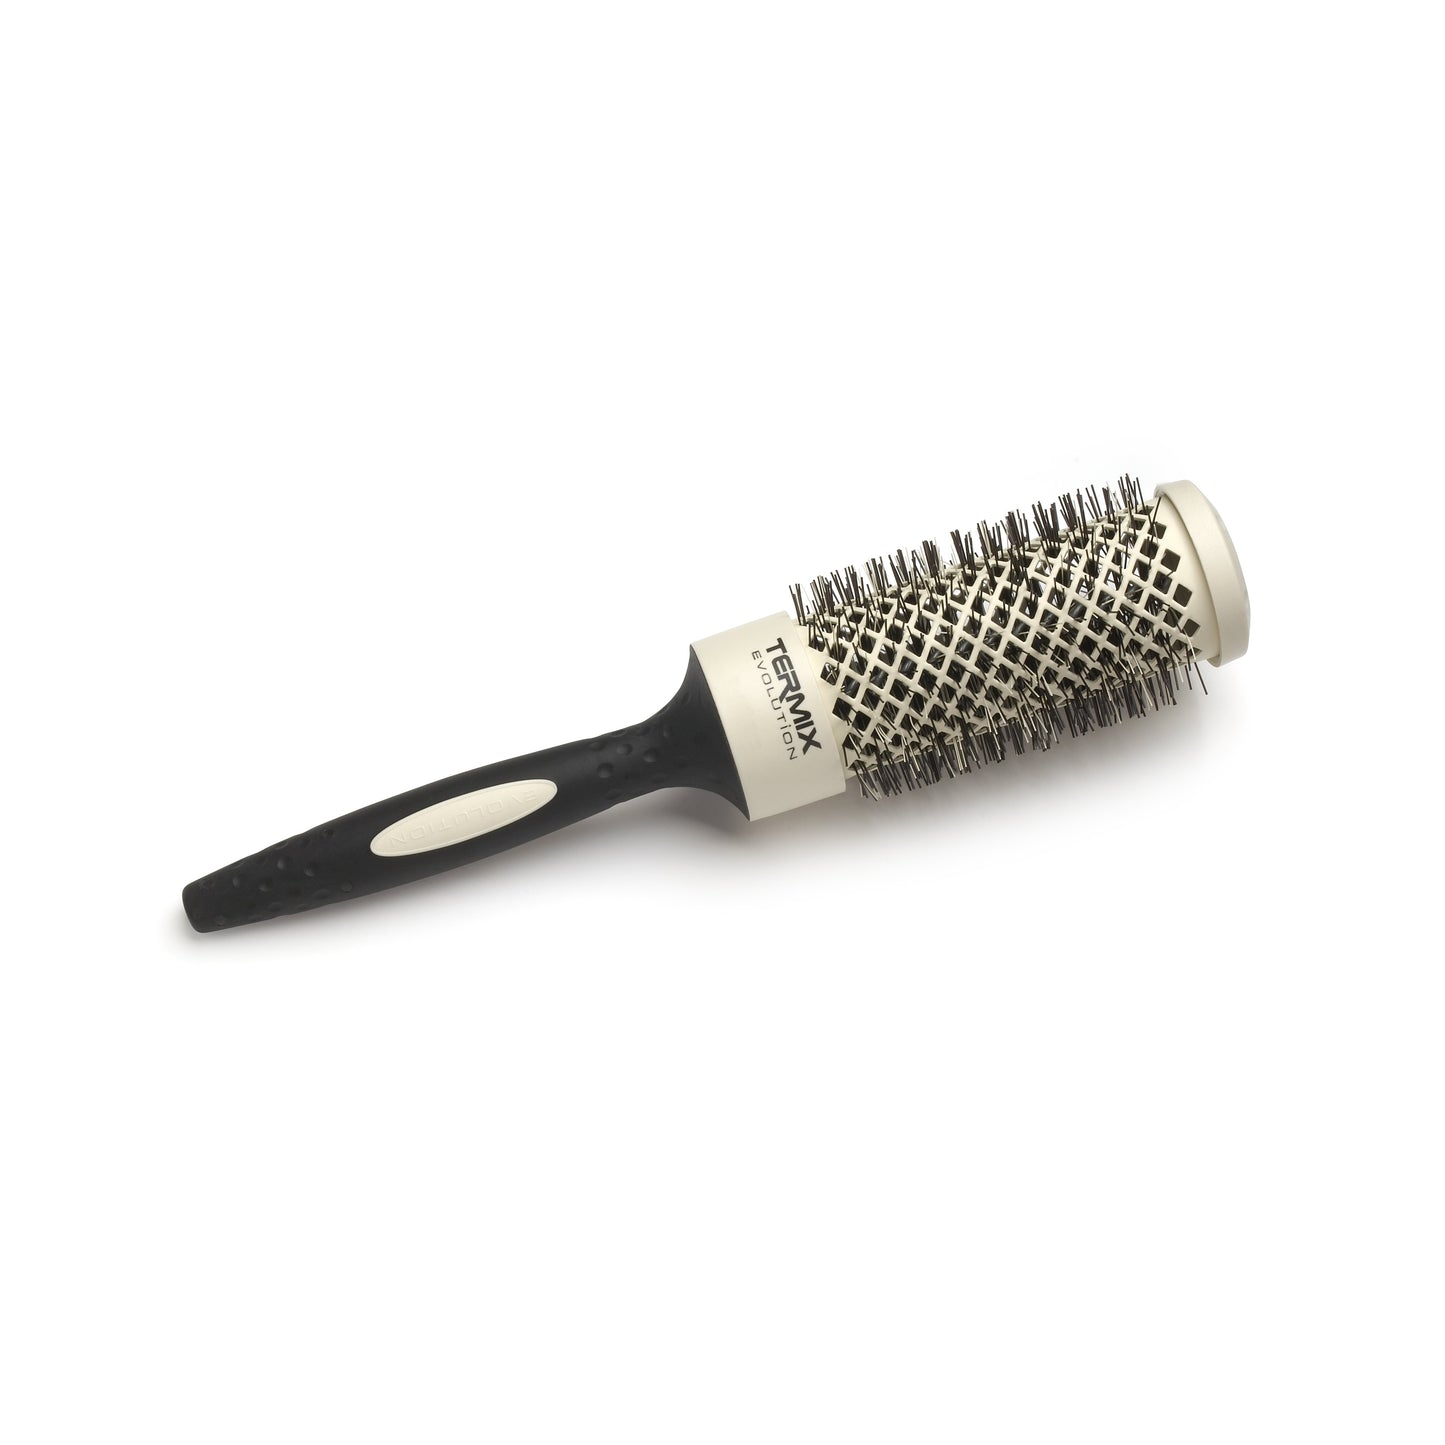 Termix Evolution Styling Brush 37mm BASIC for Normal Hair